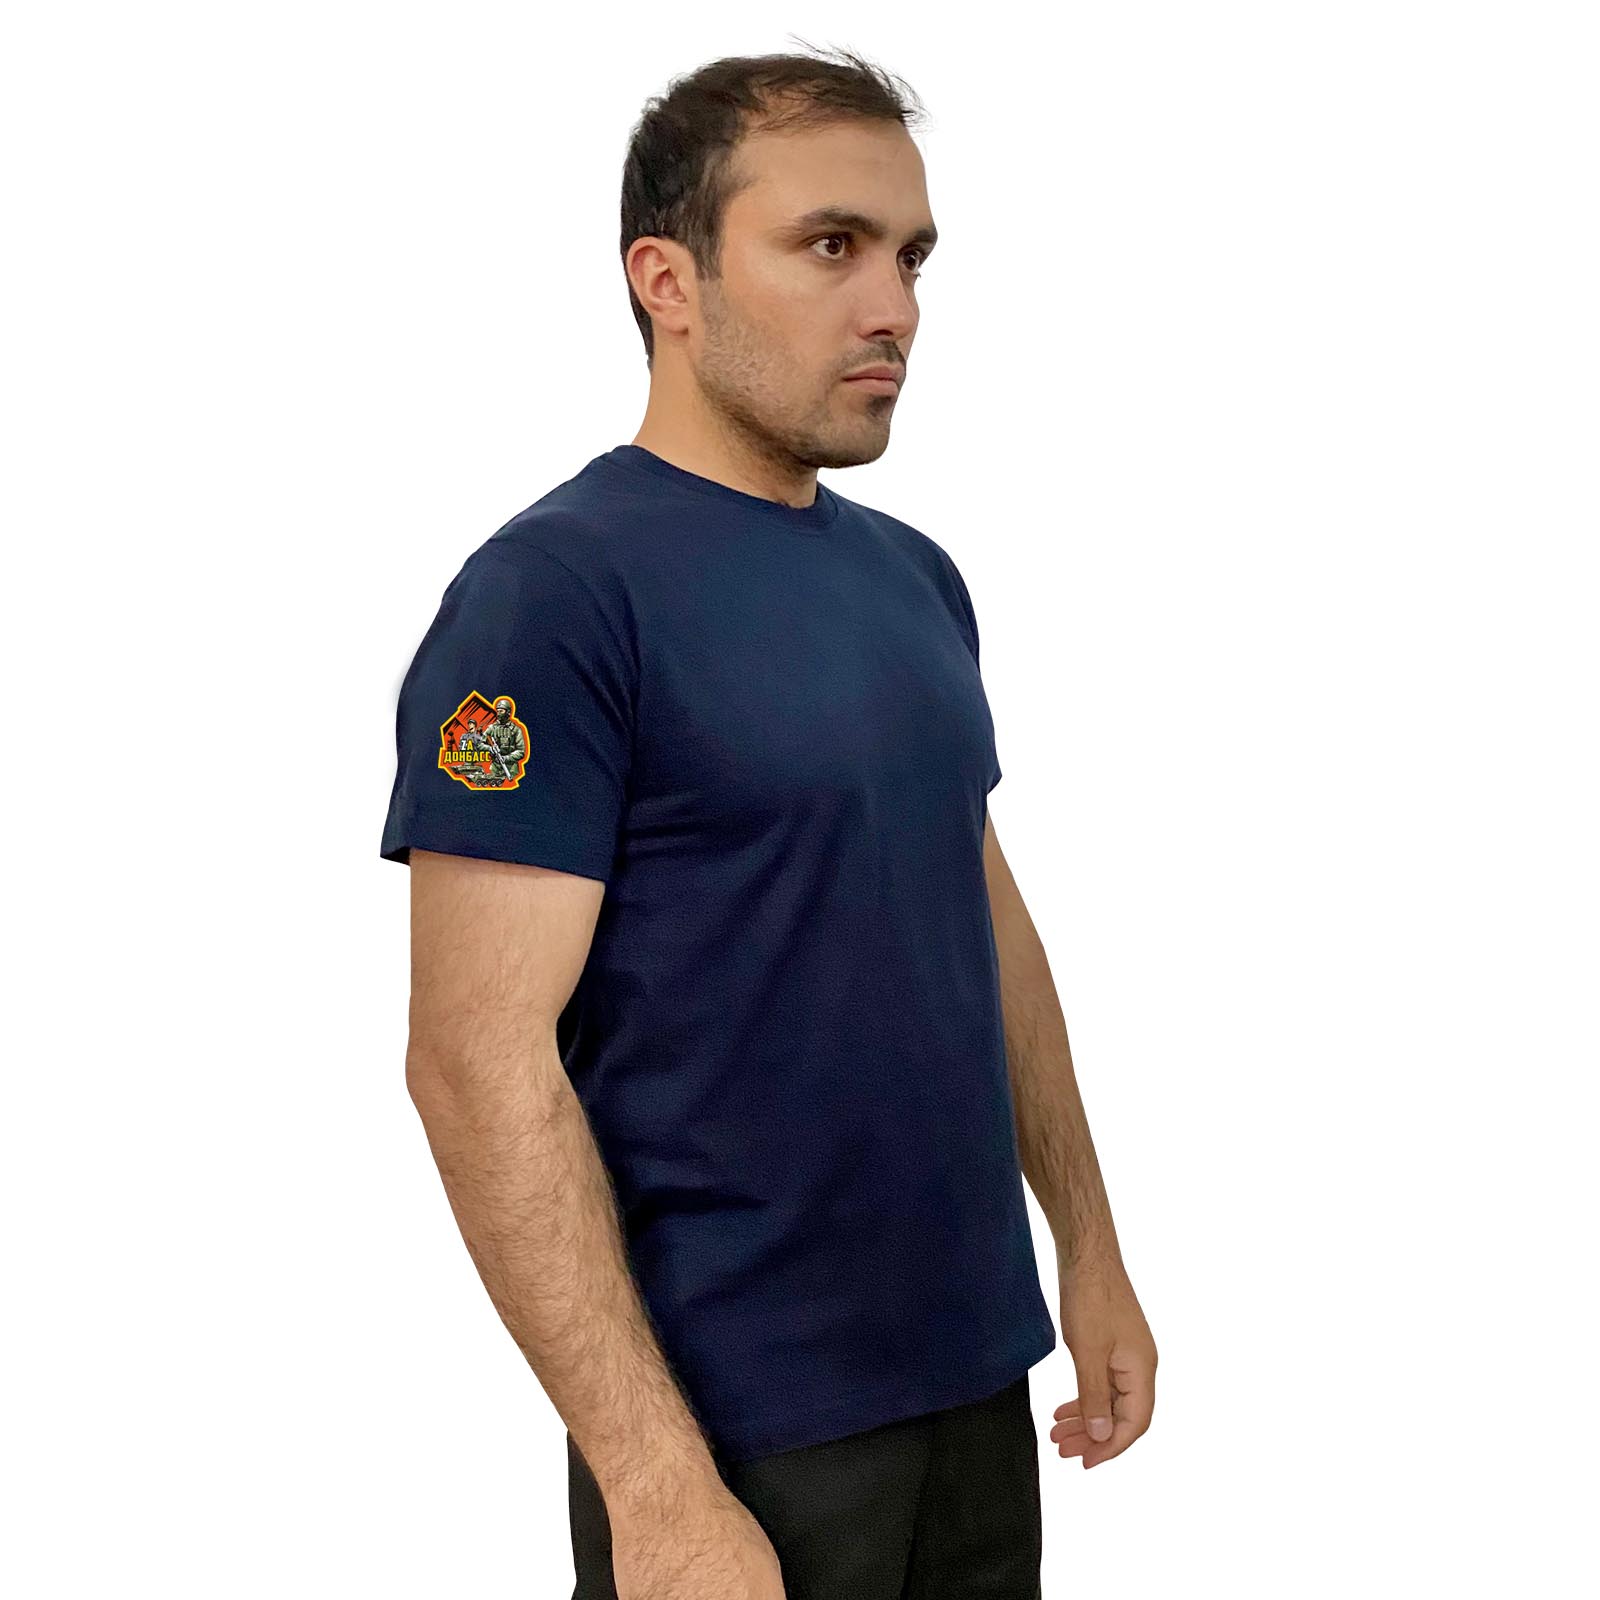 Тёмно-синяя футболка с термоаппликацией "Zа Донбасс" на рукаве